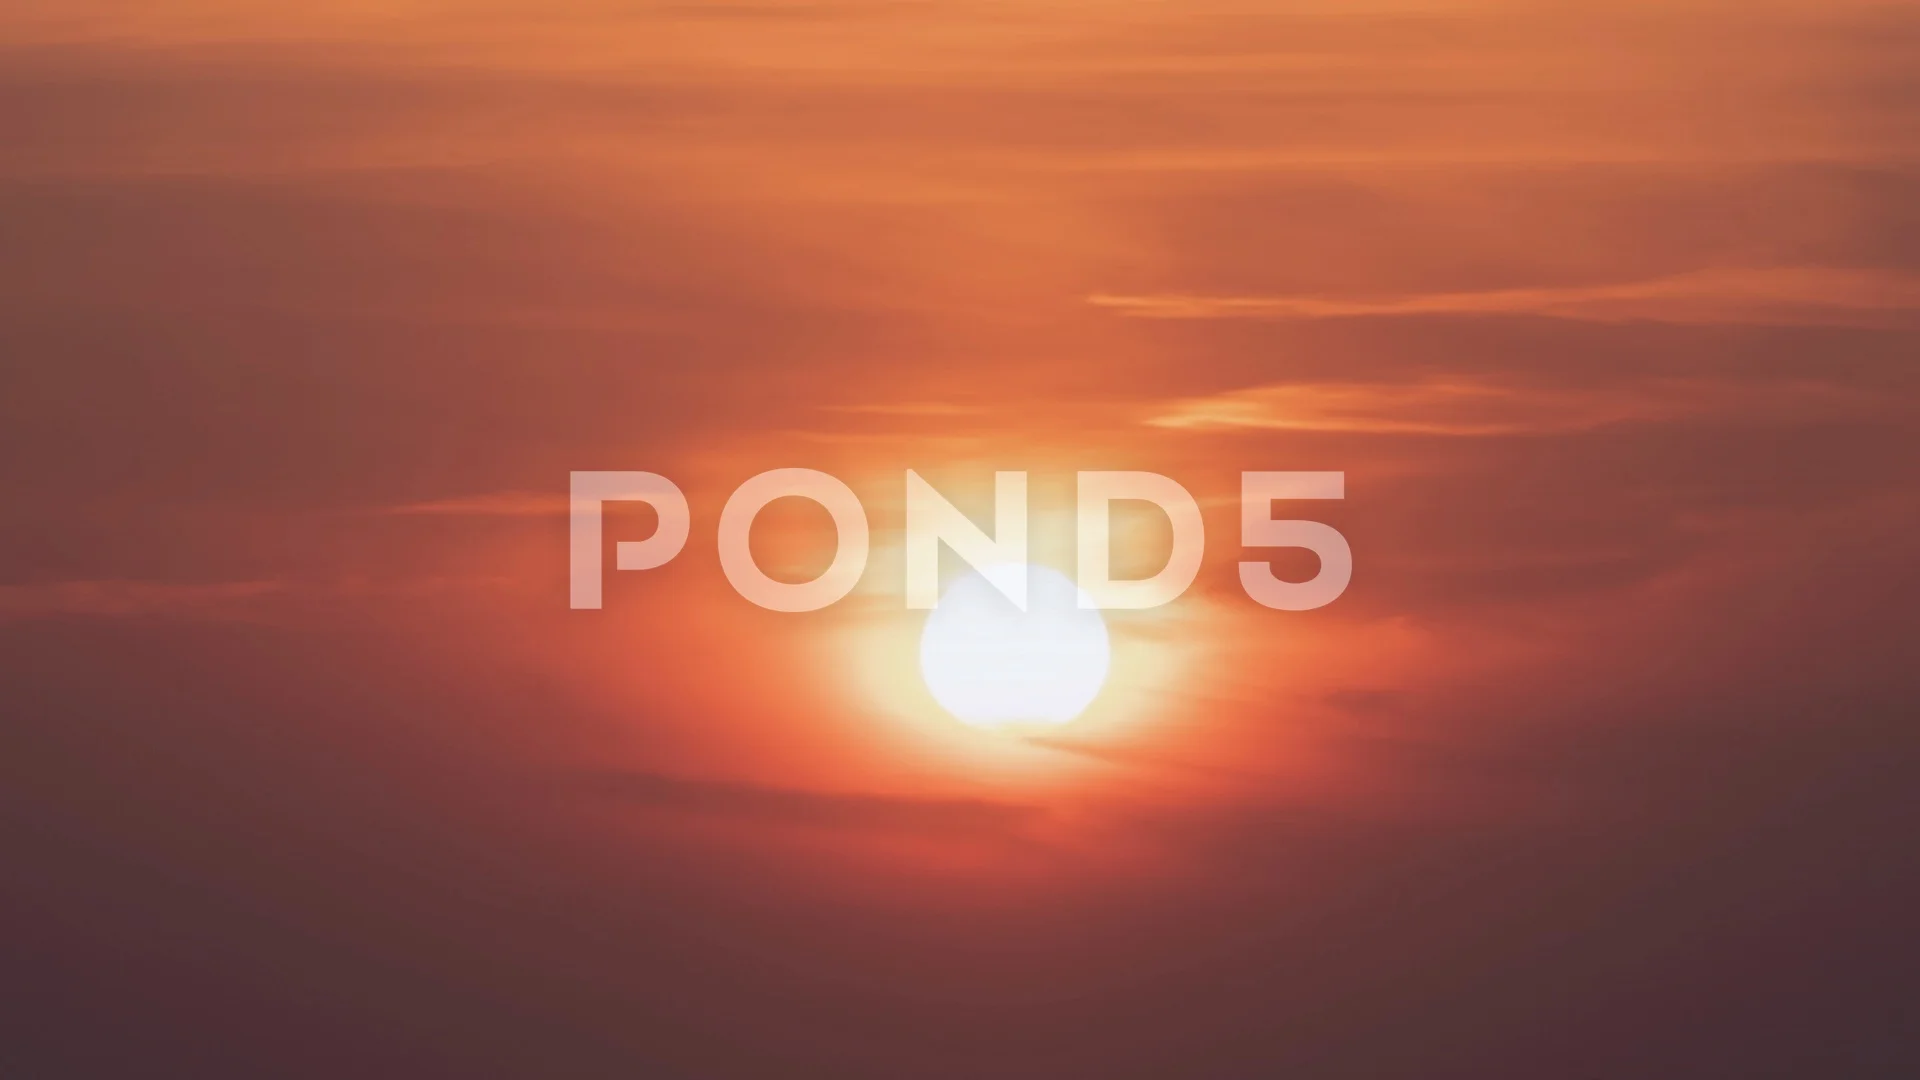 Våd Fantastisk Blive gift Sunrise Time Lapse - Nature B-roll - Mor... | Stock Video | Pond5